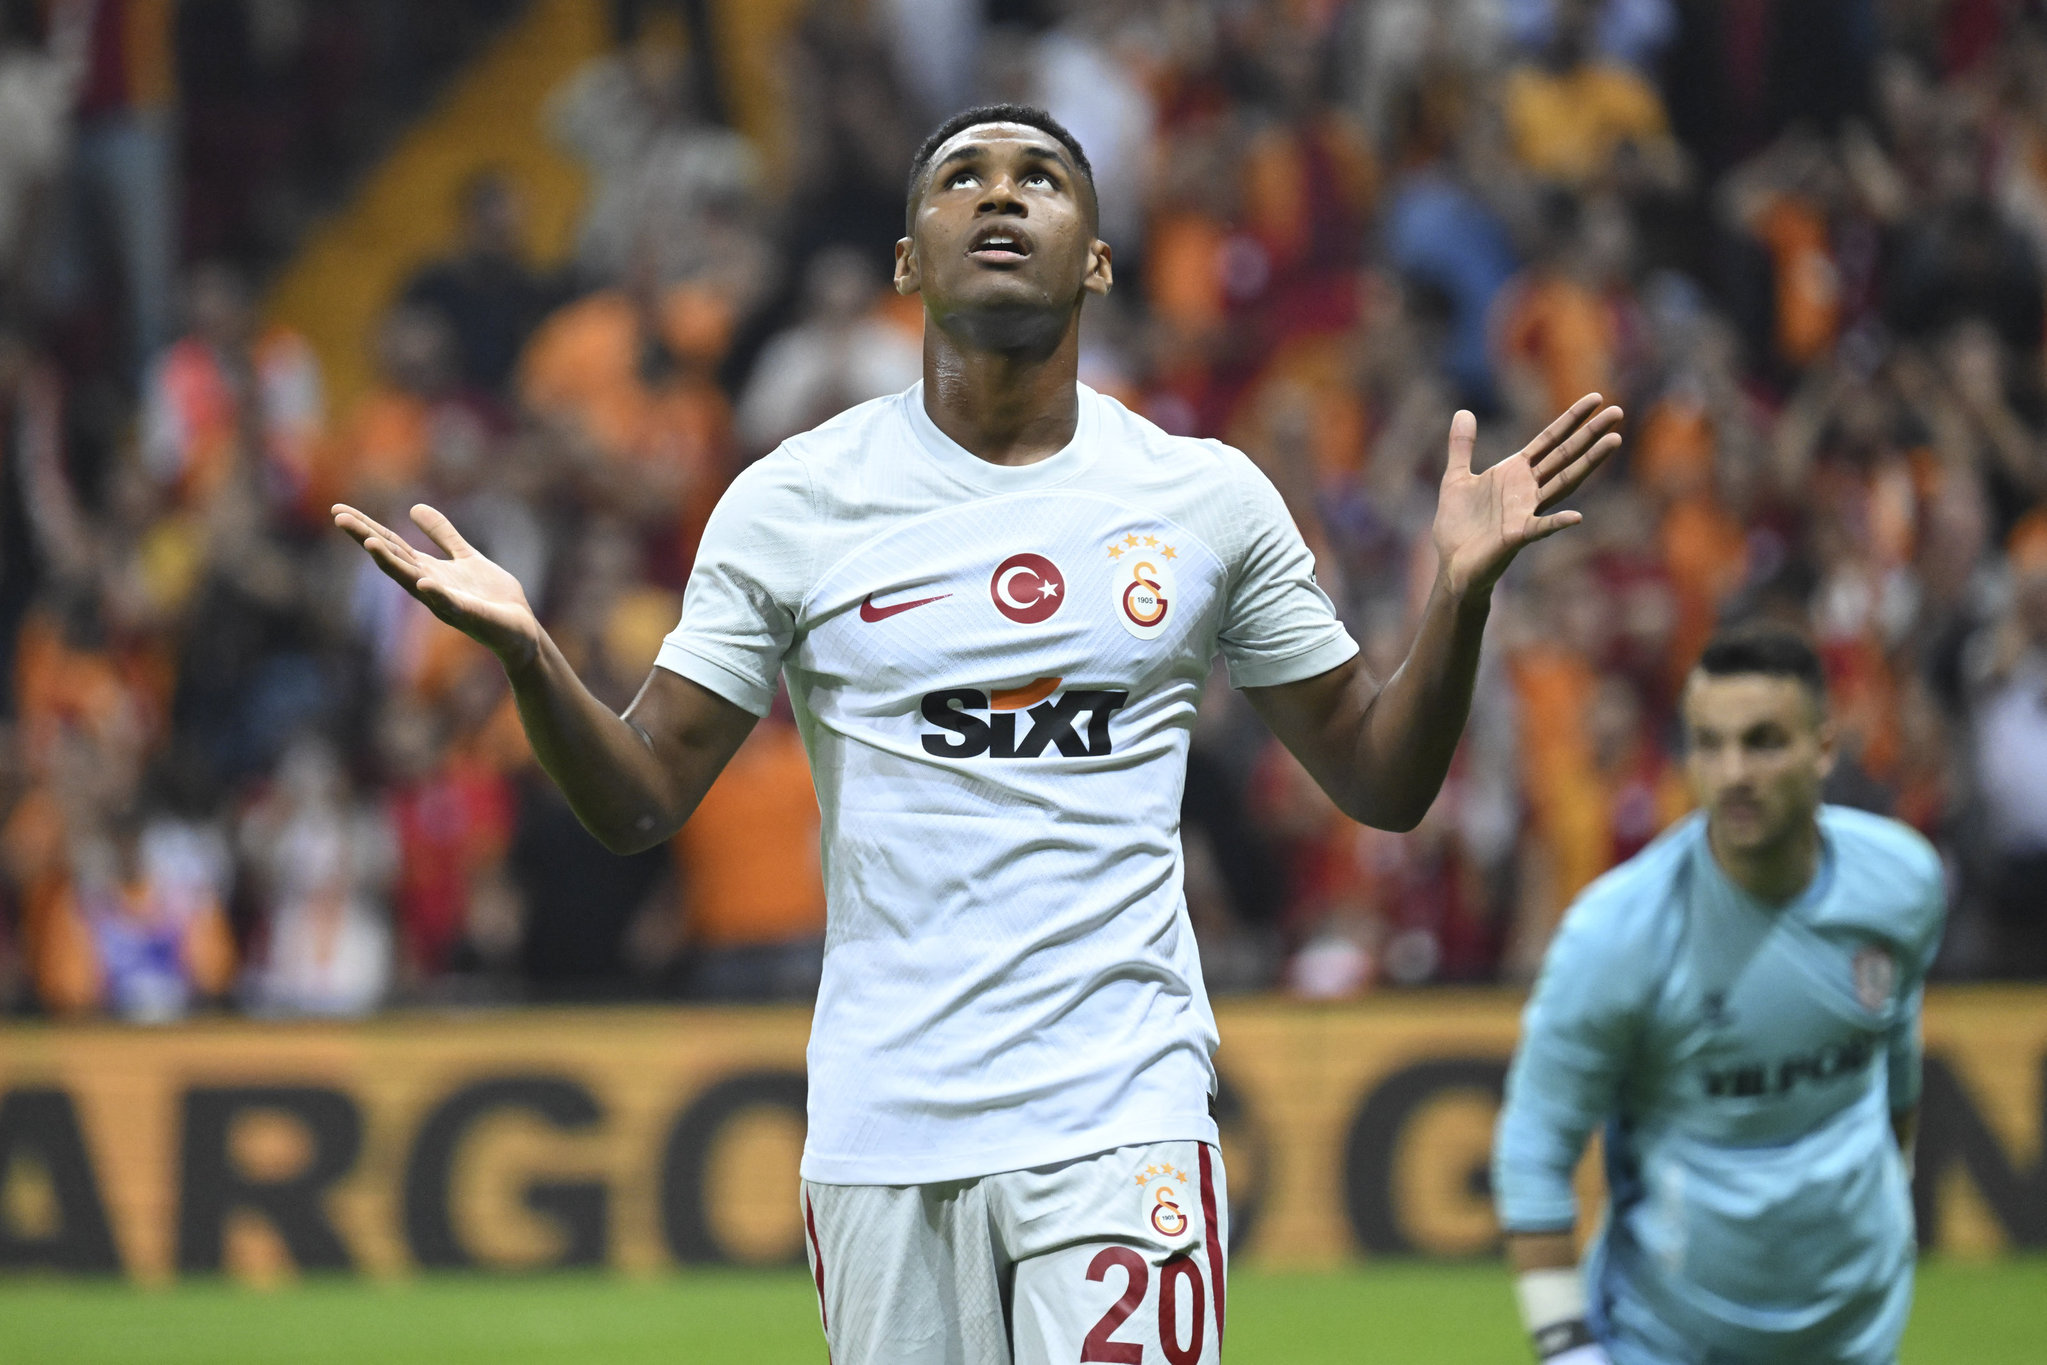 Avrupa Galatasaray’ı konuşacak! Cimbom’dan ses getirecek transfer hamlesi